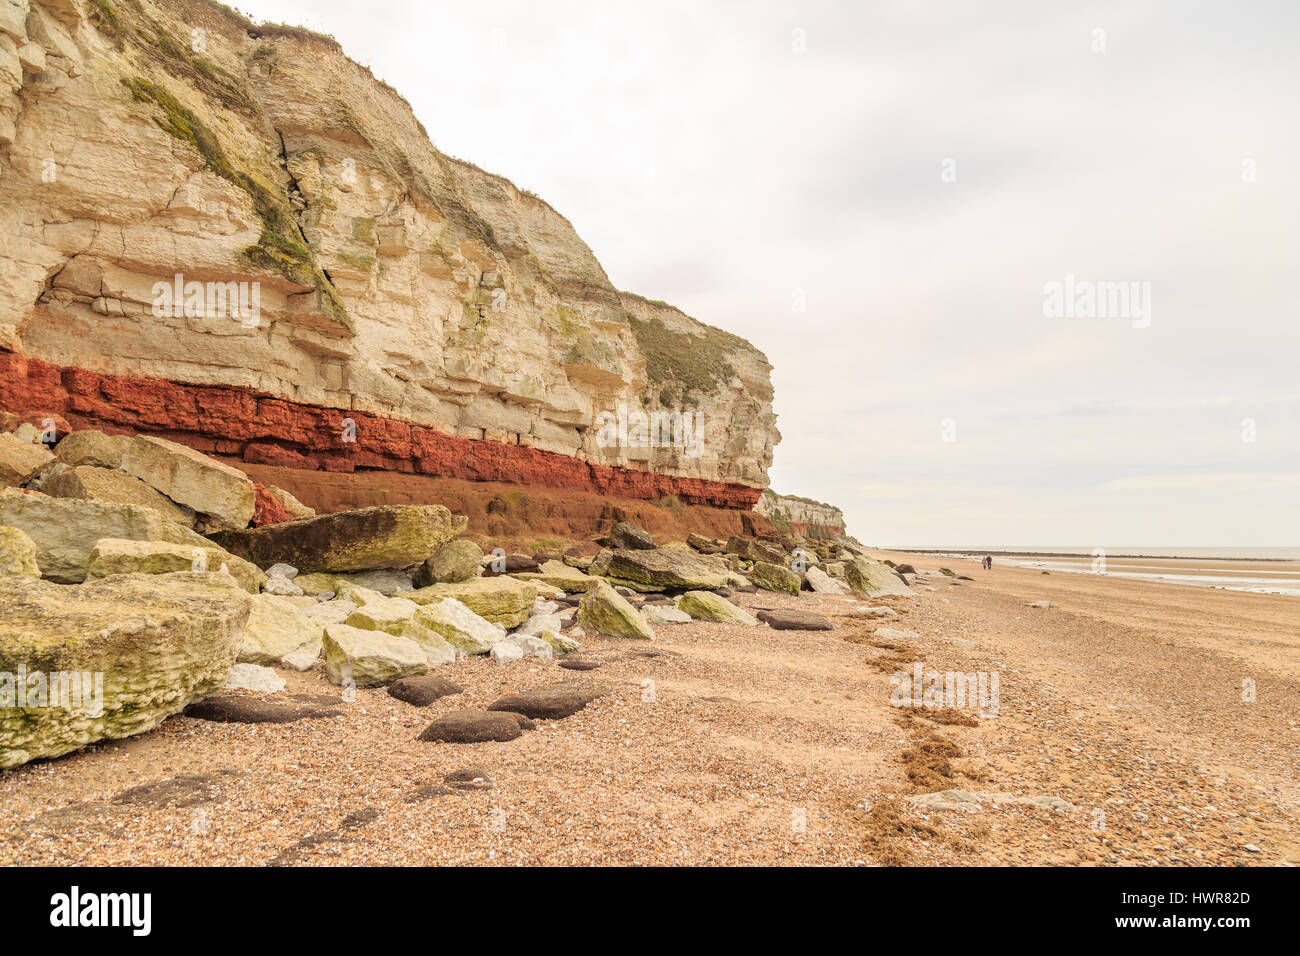 Hunstanton, Inghilterra - marzo 10: bianco gesso e pietra arenaria rossa geological scogliera formazione a Hunstanton, Norfolk, Inghilterra. Immagine hdr. in hunstanto Foto Stock